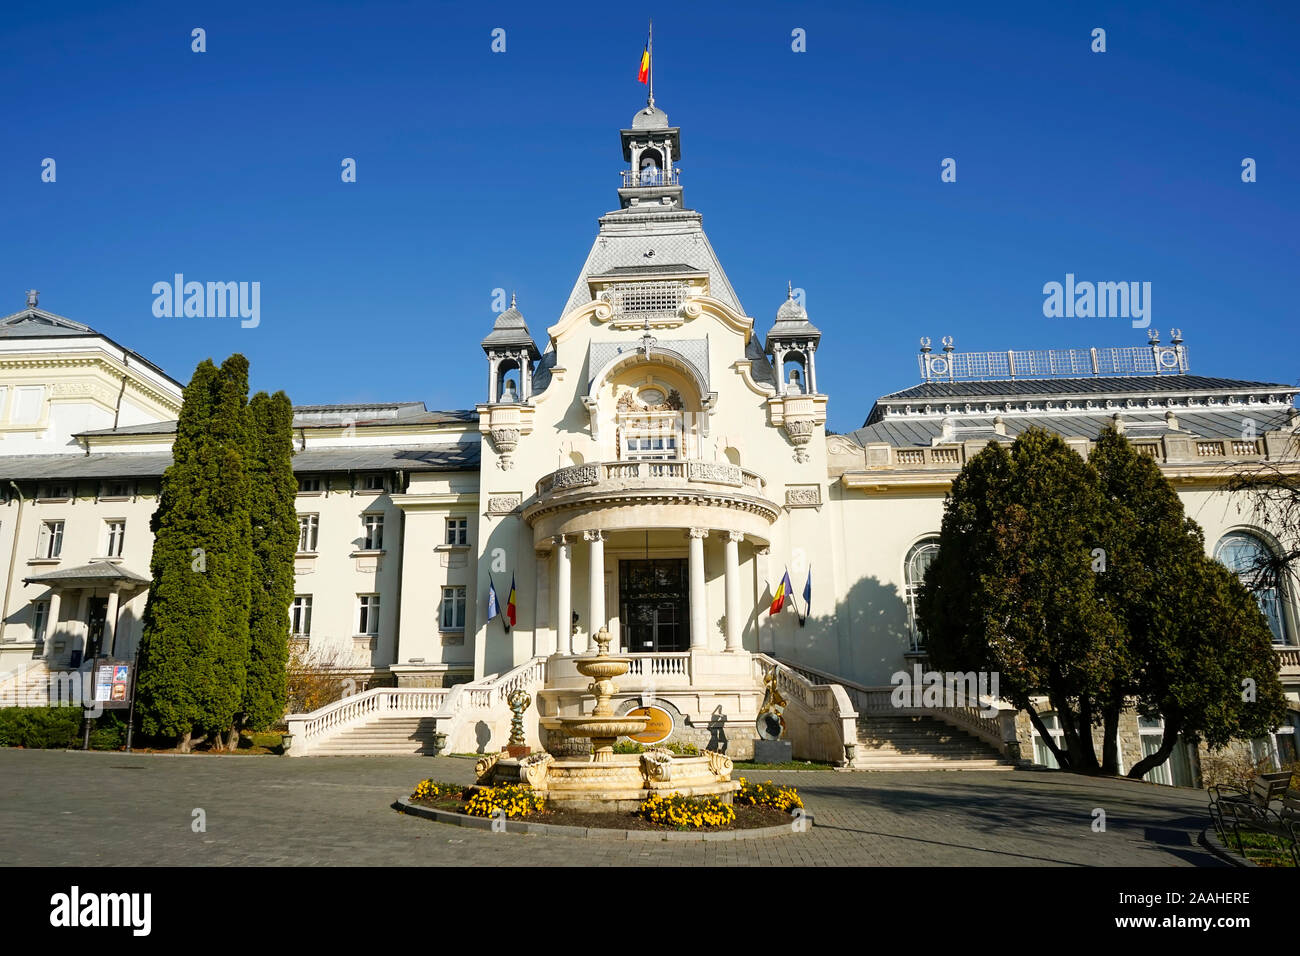 El edificio del Casino en Sinaia, Rumania, elegante edificio cultural a principios del siglo XX de estilo neoclásico , preferido por la aristocracia rumana Foto de stock